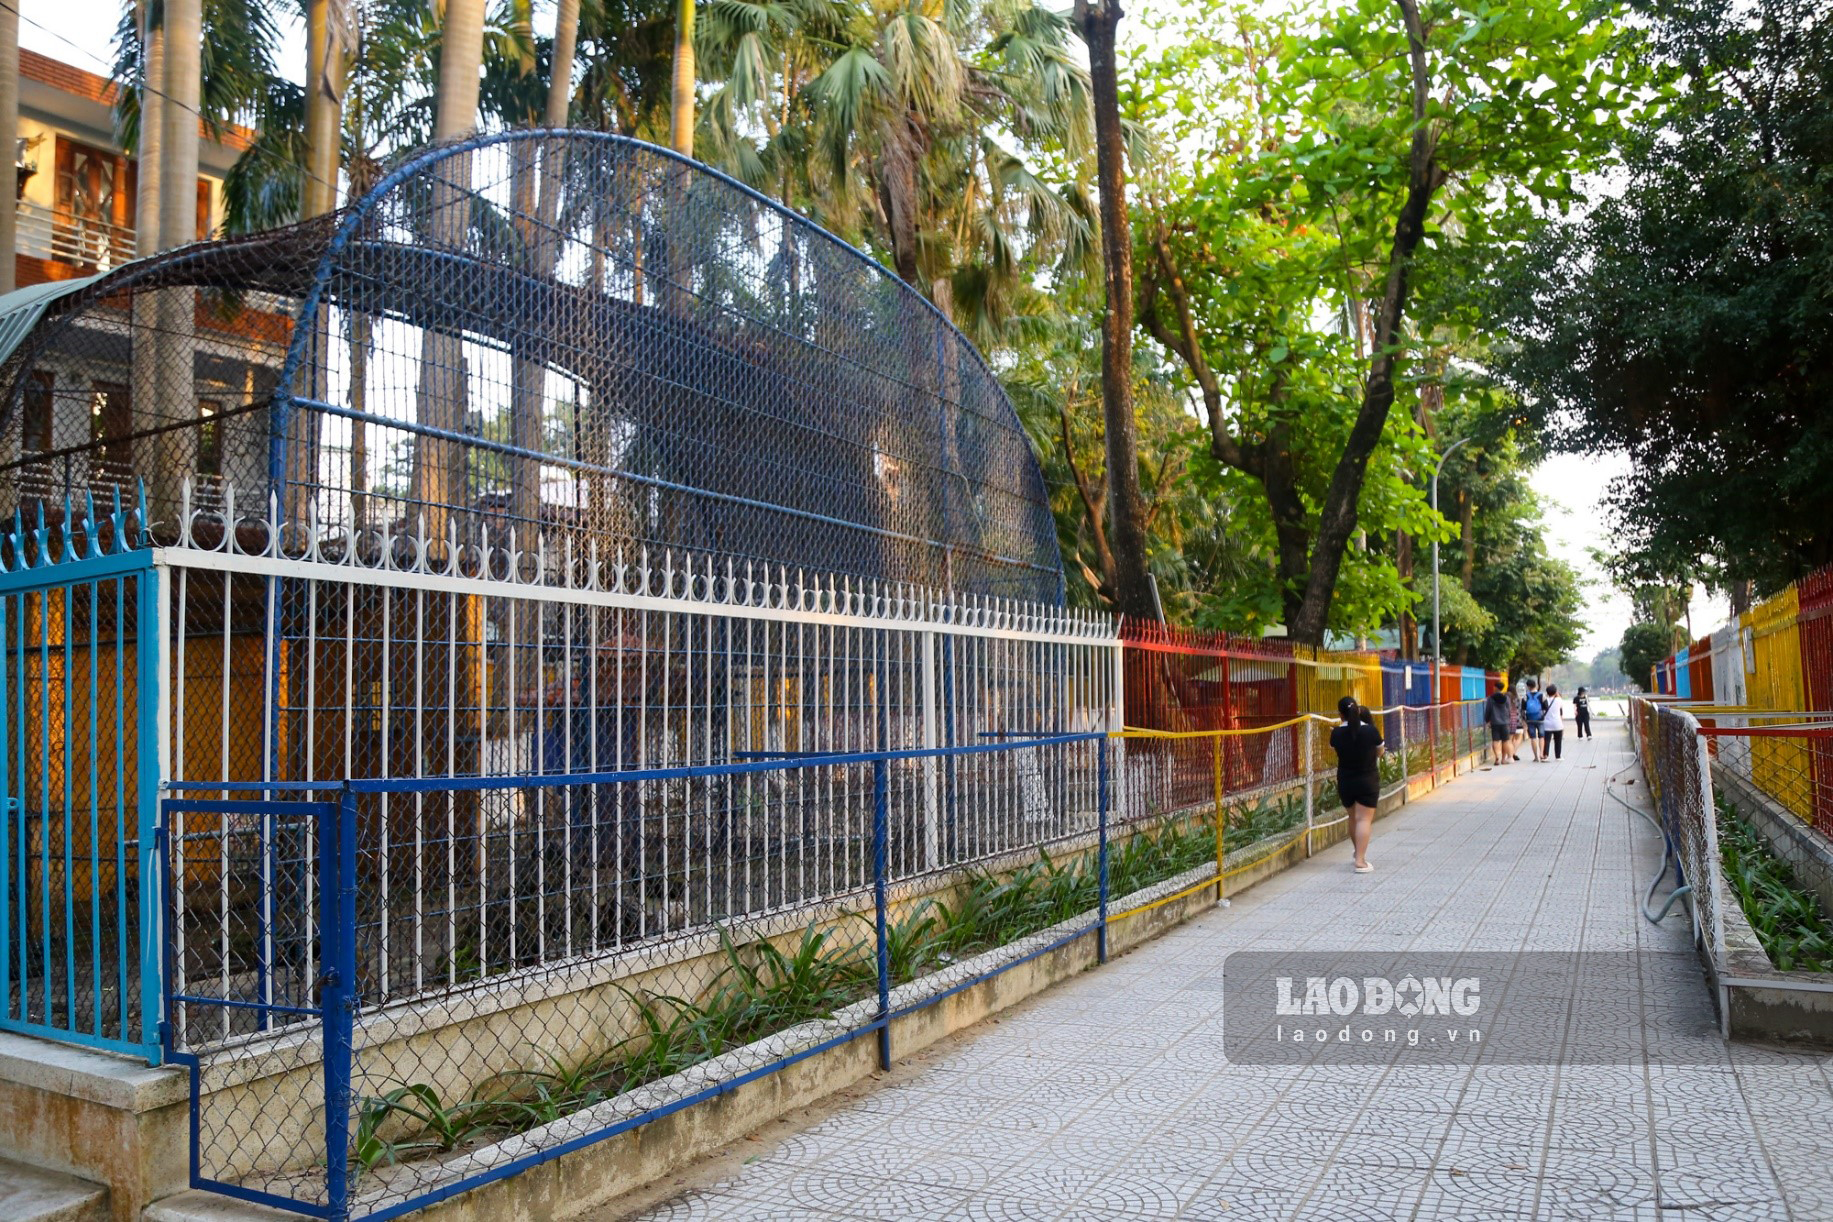 Theo Trung tâm Văn hóa - Thể thao quận Thanh Khê cho biết, sắp tới đơn vị sẽ triển khai dự án cải tạo Công viên 29-3, lúc ấy vườn thú này sẽ bị “xóa sổ”, những con thú ở đây sẽ được chuyển về một môi trường có điều kiện sống thuận lợi hơn.